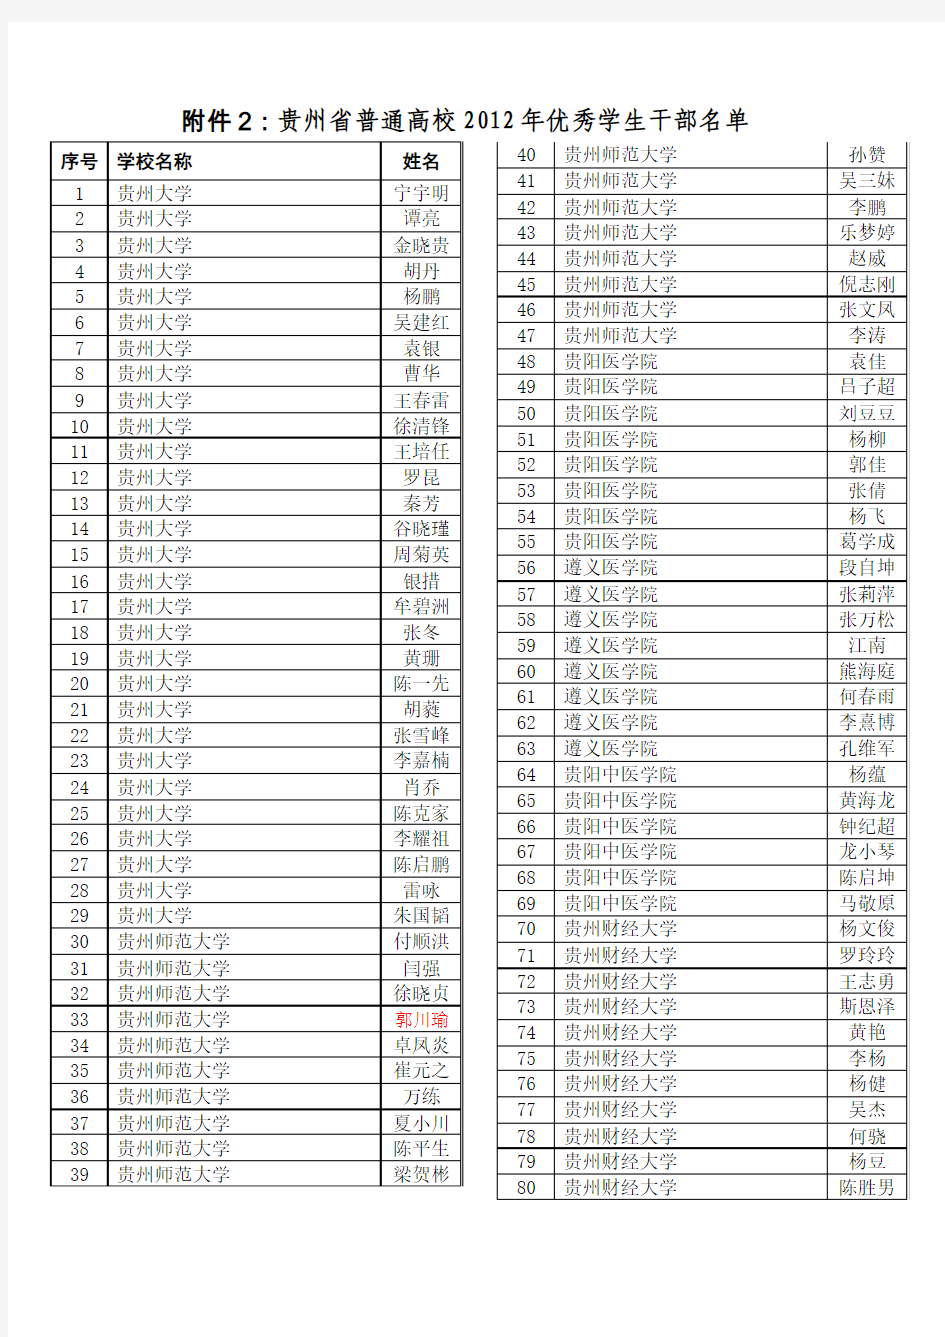 贵州省普通高校2012年优秀学生干部名单